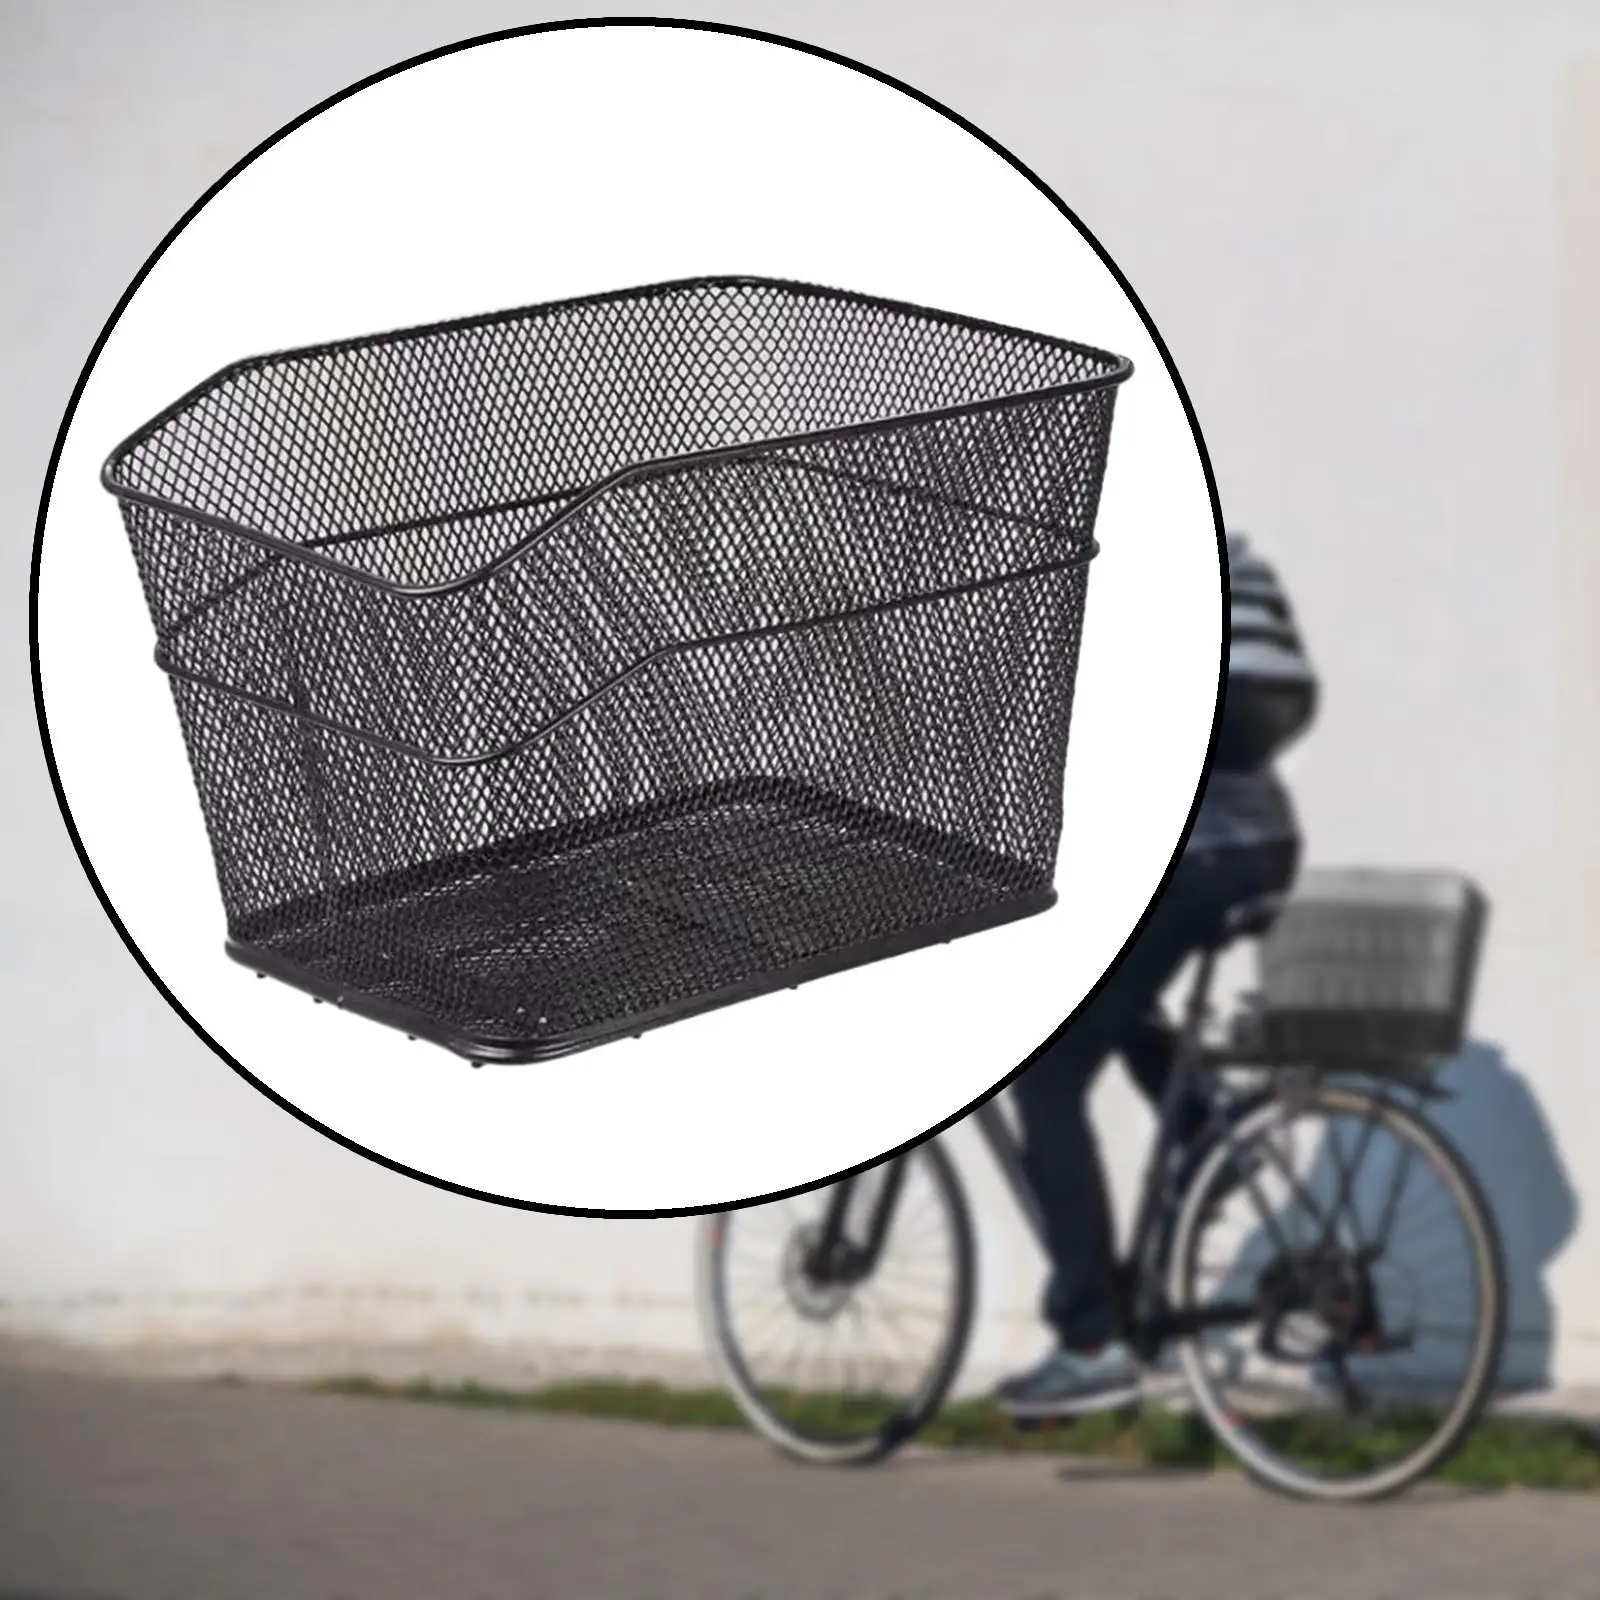 Rear Bike Basket Riding Storage Container Metal Bicycle Cargo Rack Basket